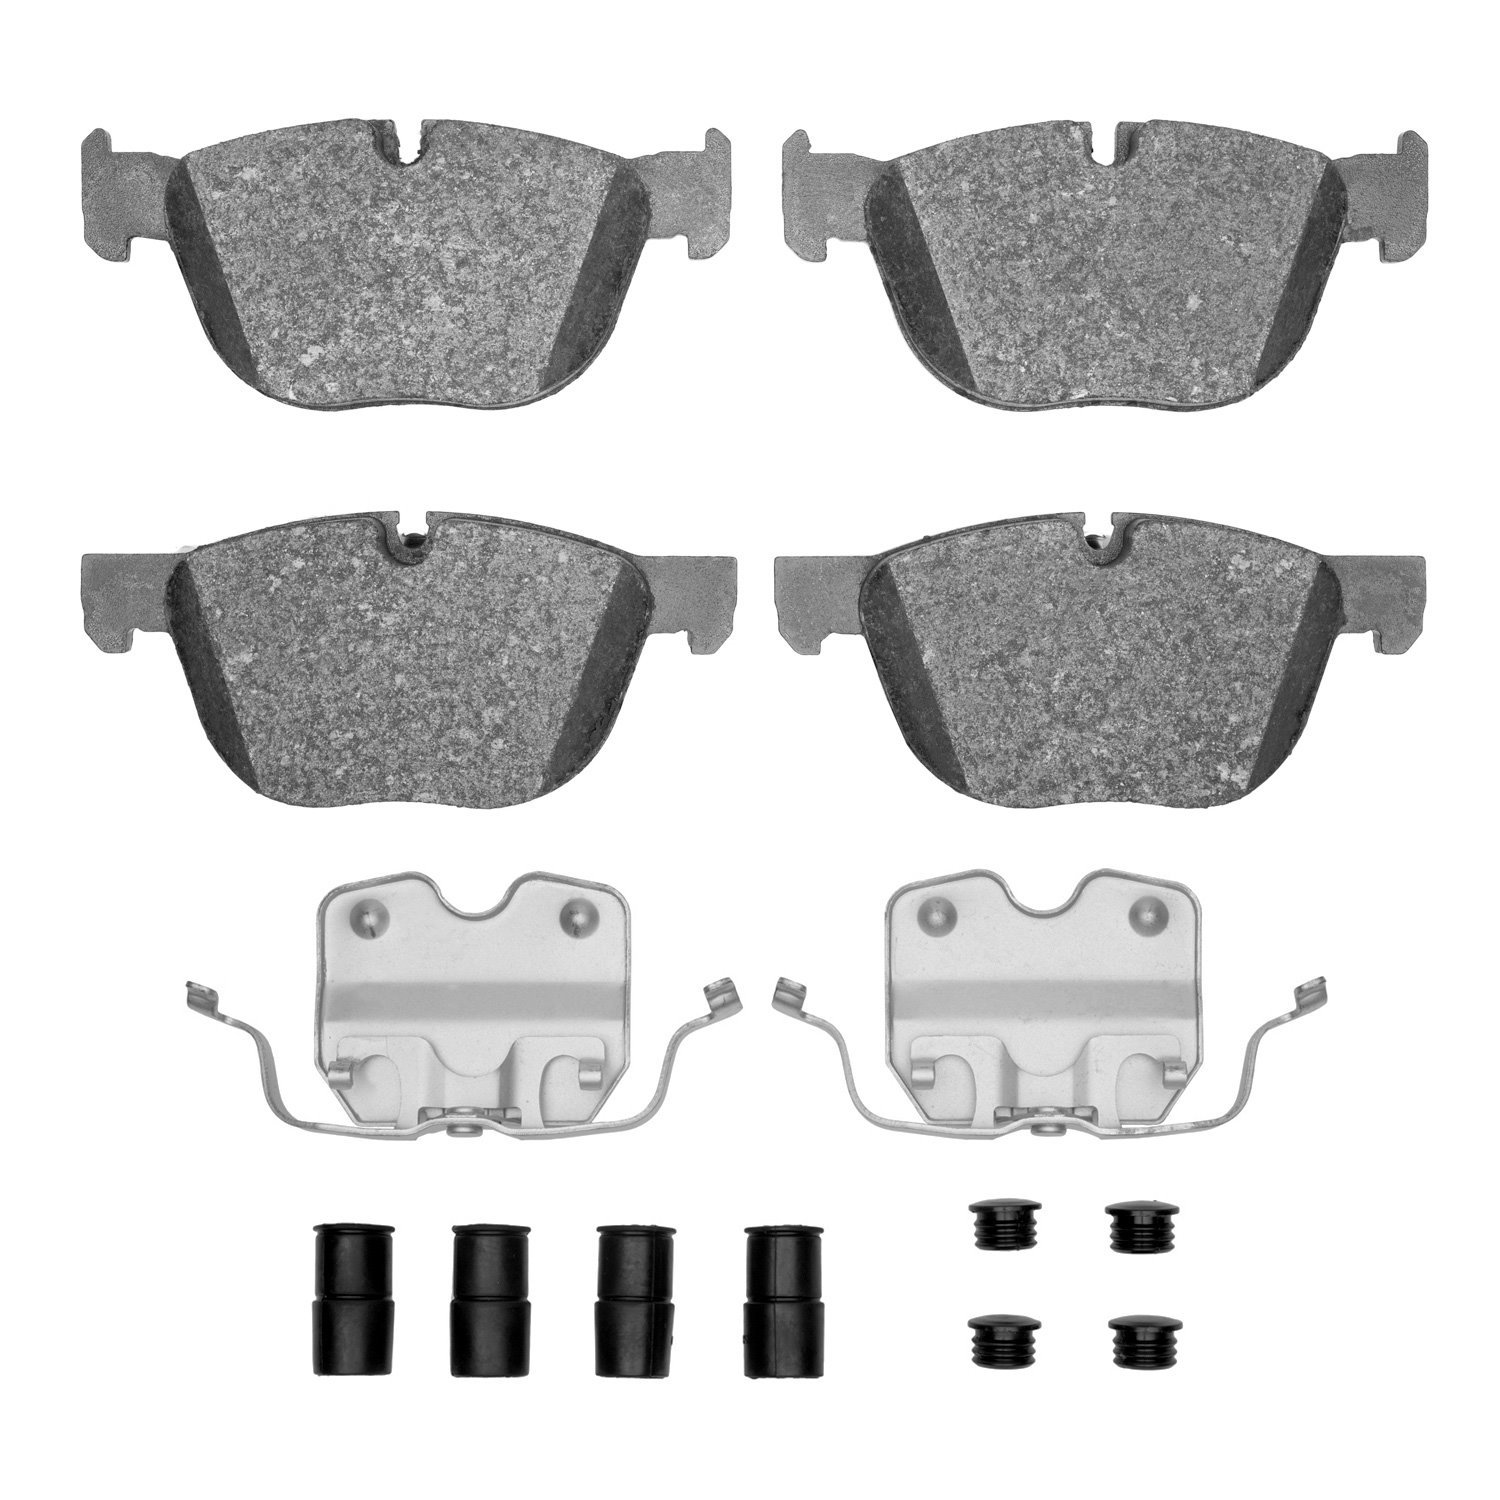 1600-1294-01 5000 Euro Ceramic Brake Pads & Hardware Kit, 2007-2019 BMW, Position: Front